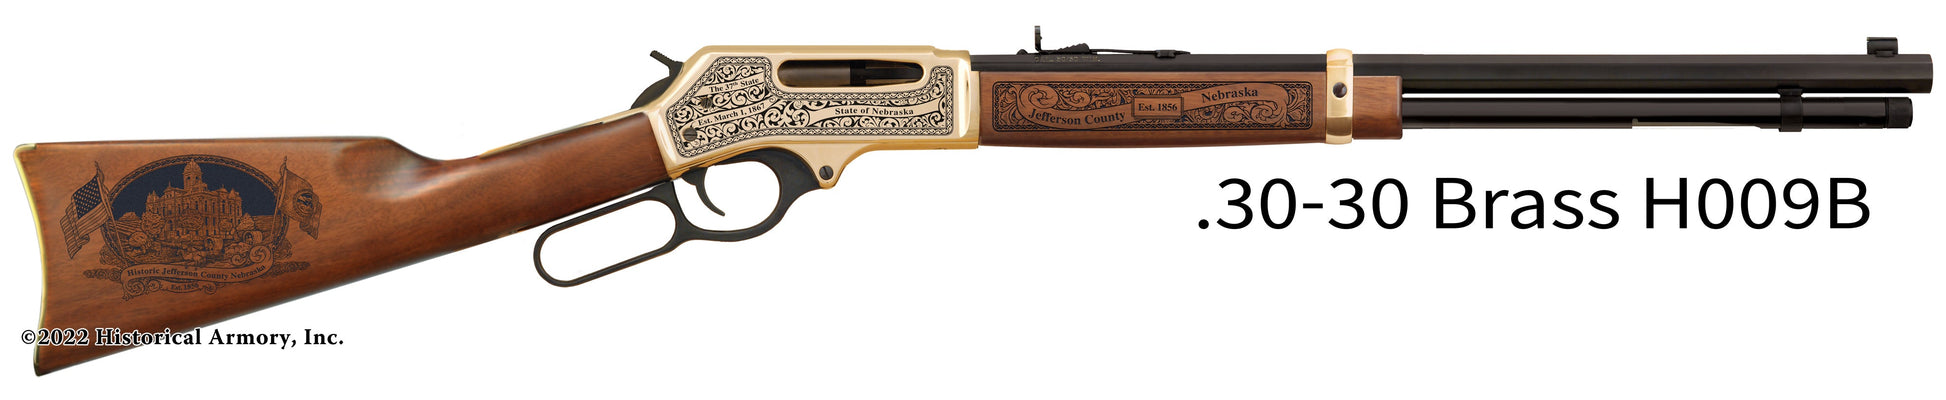 Jefferson County Nebraska Engraved Henry .30-30 Rifle